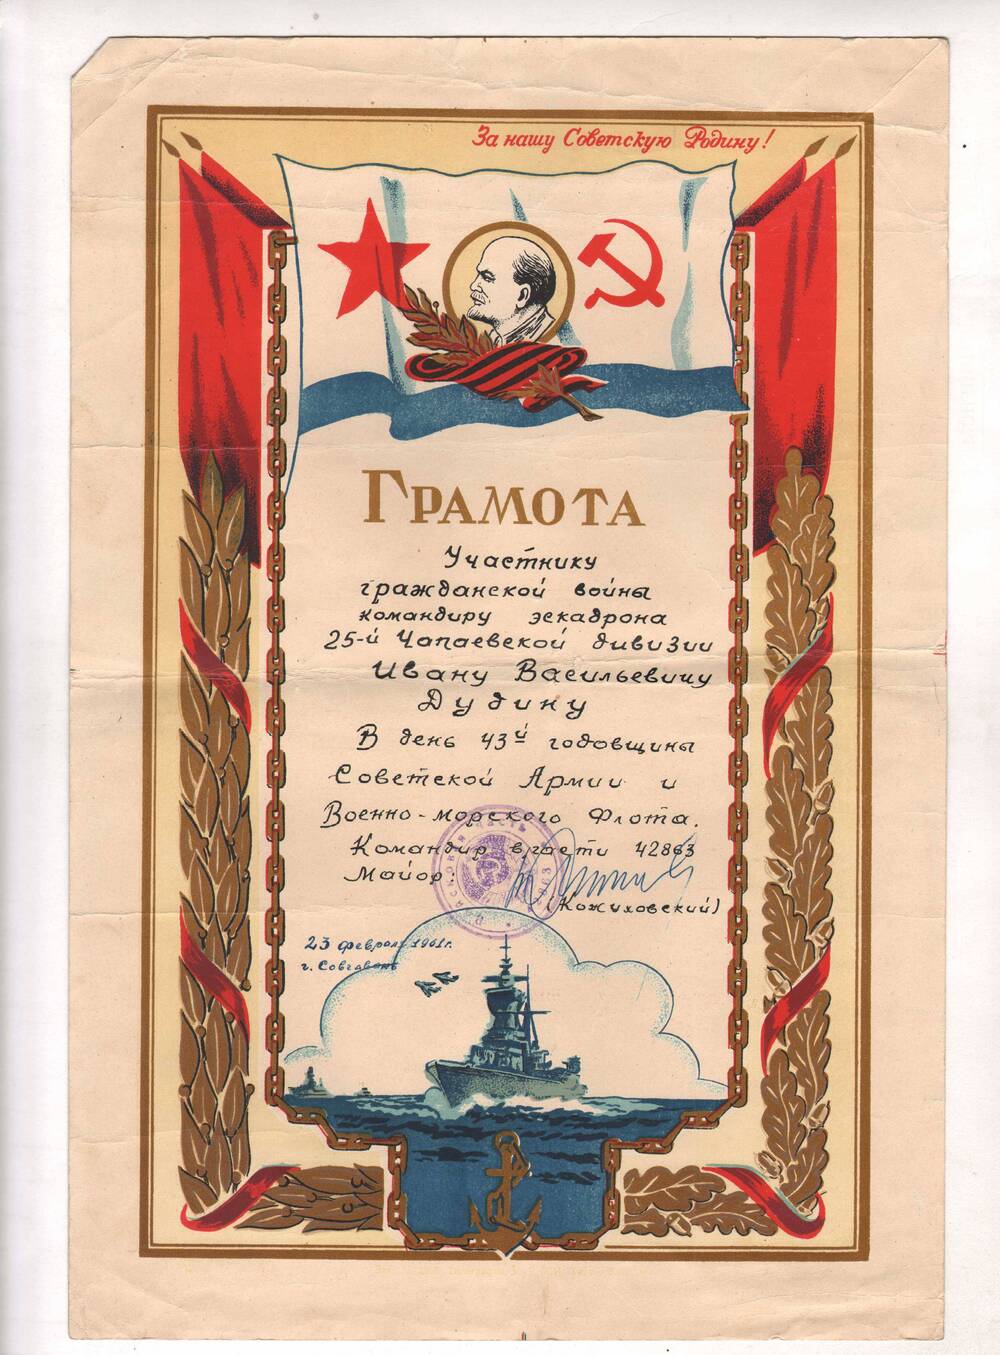 Грамота участнику гражданской войны Дугину И.В. в день 43-й годовщины Советской Армии и Военно-Морского флота